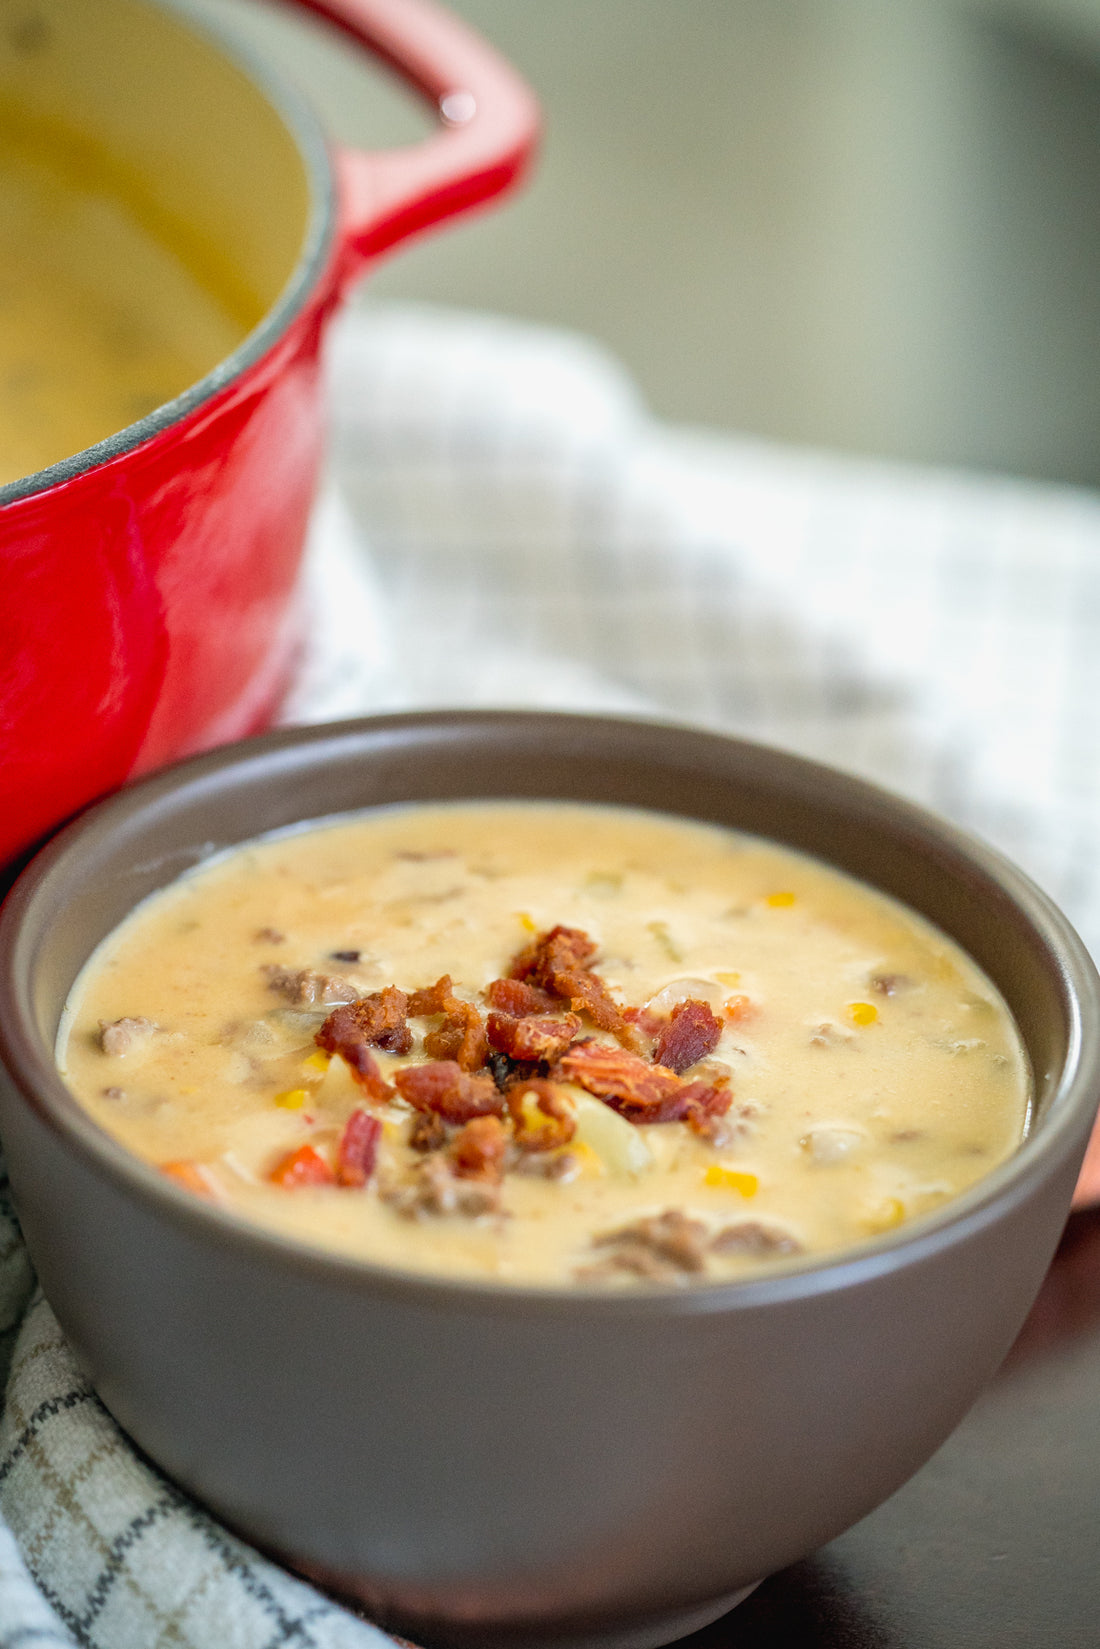 Cheesy Cowboy Soup||Cheesy Cowboy Soup||Cheesy Cowboy Soup||Cheesy Cowboy Soup